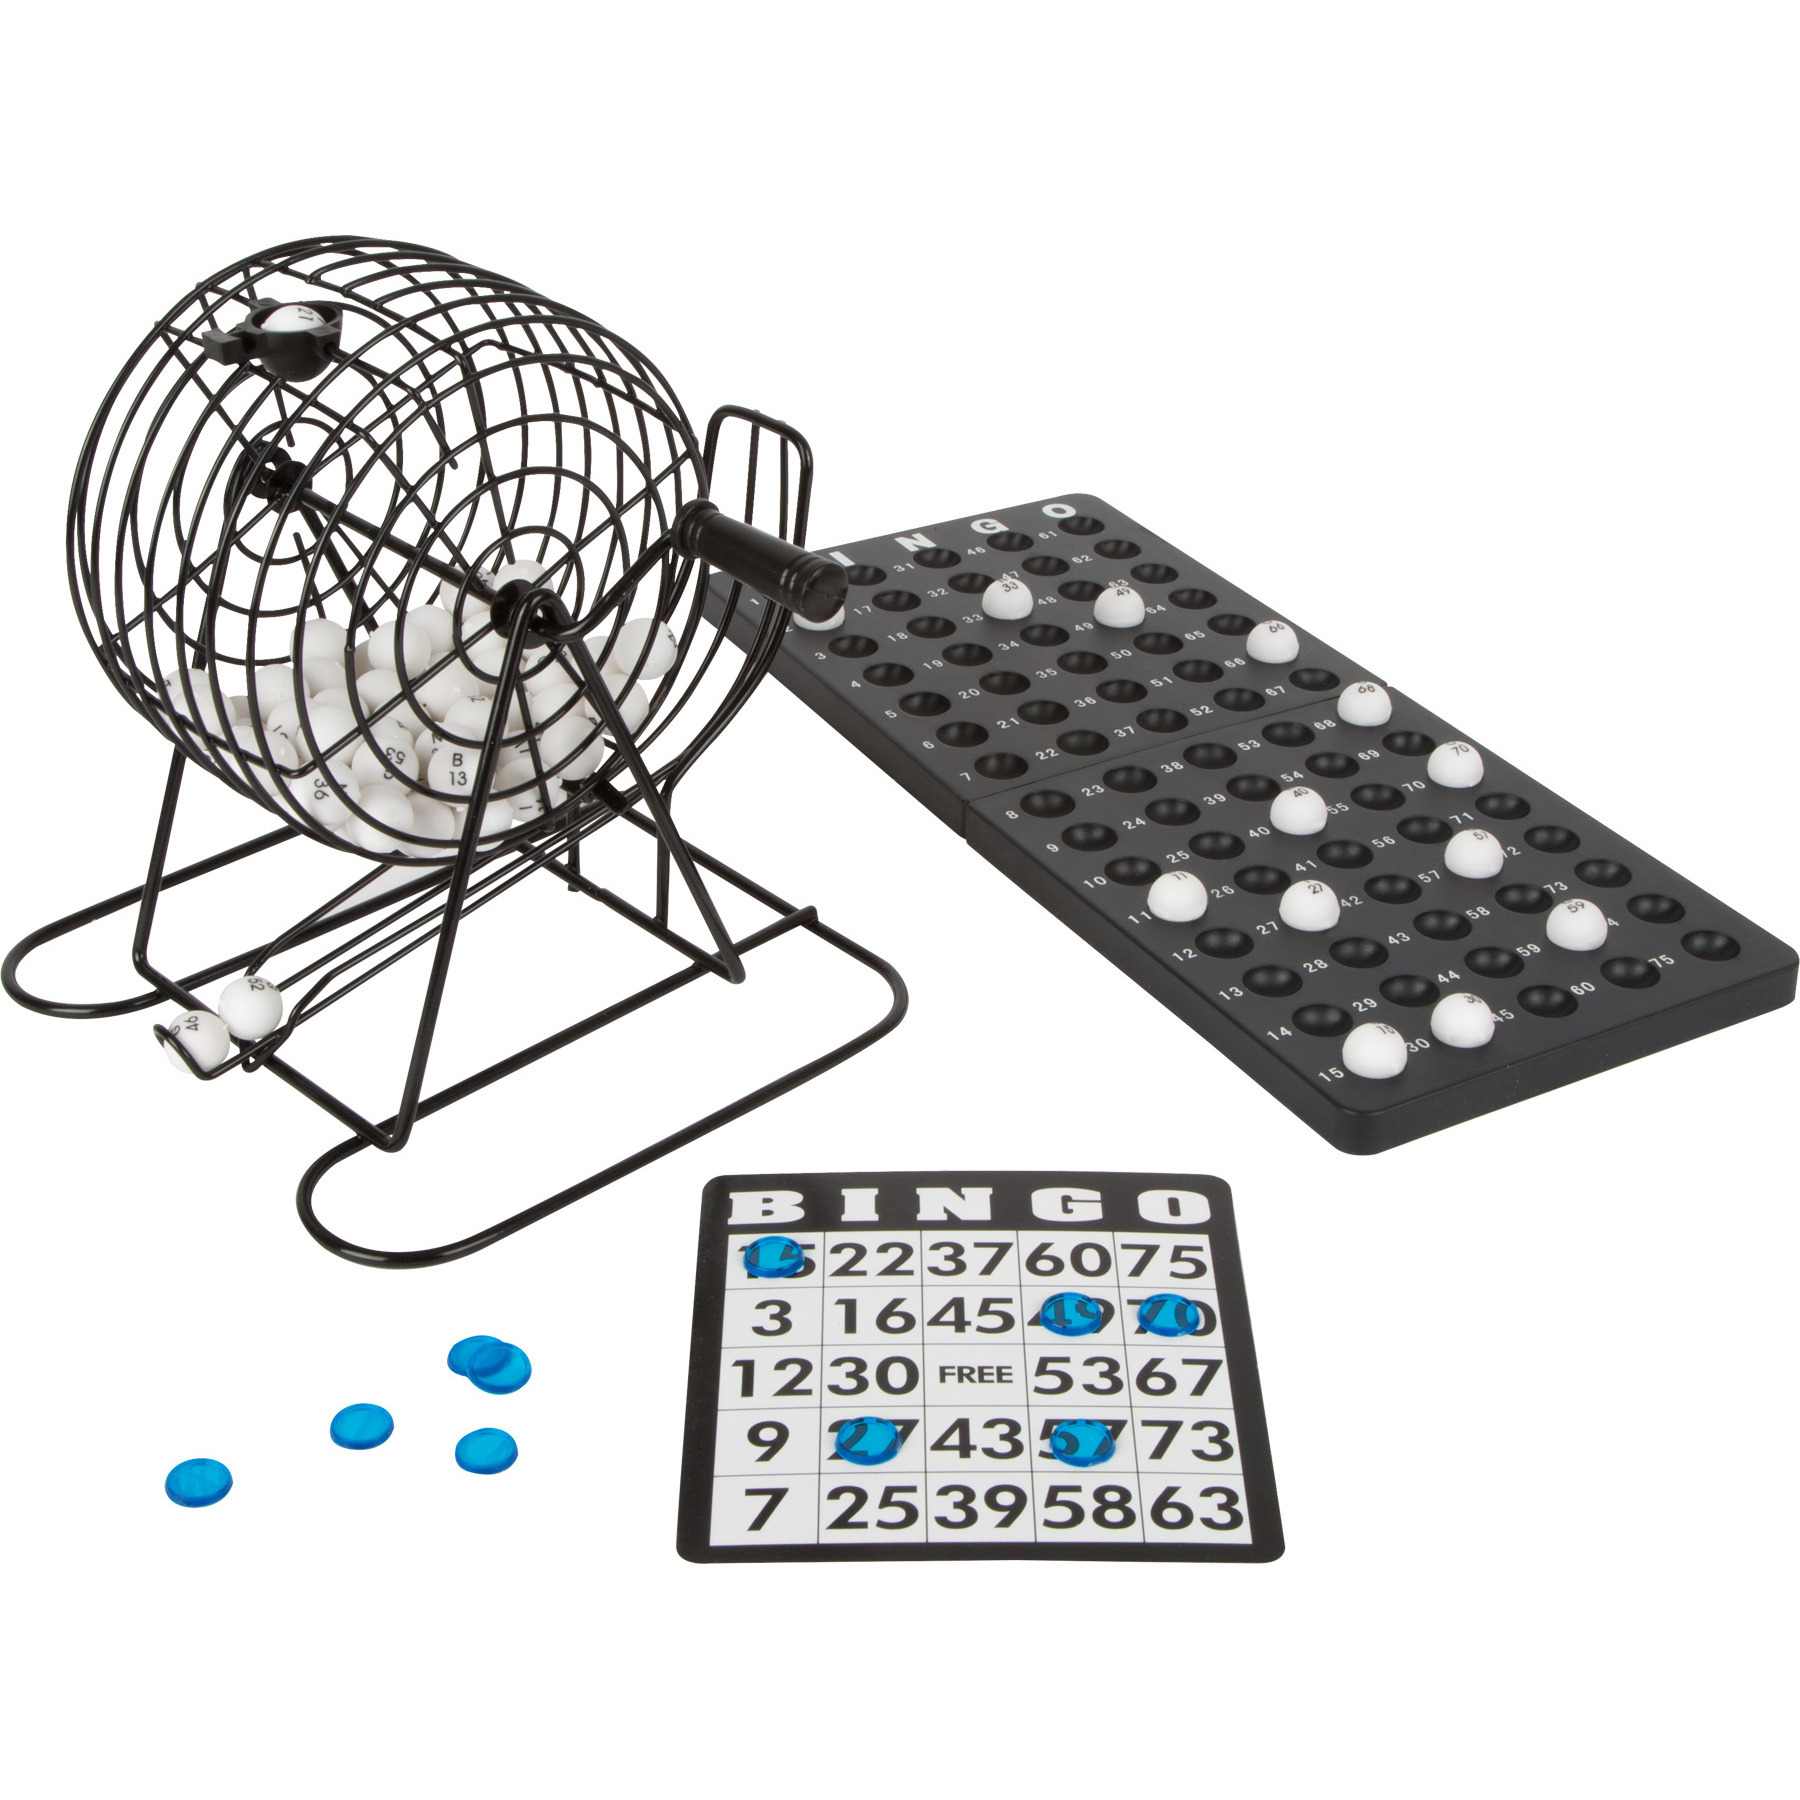 Bingo spel zwart-wit complete set 20 cm nummers 1-75 met molen en bingokaarten